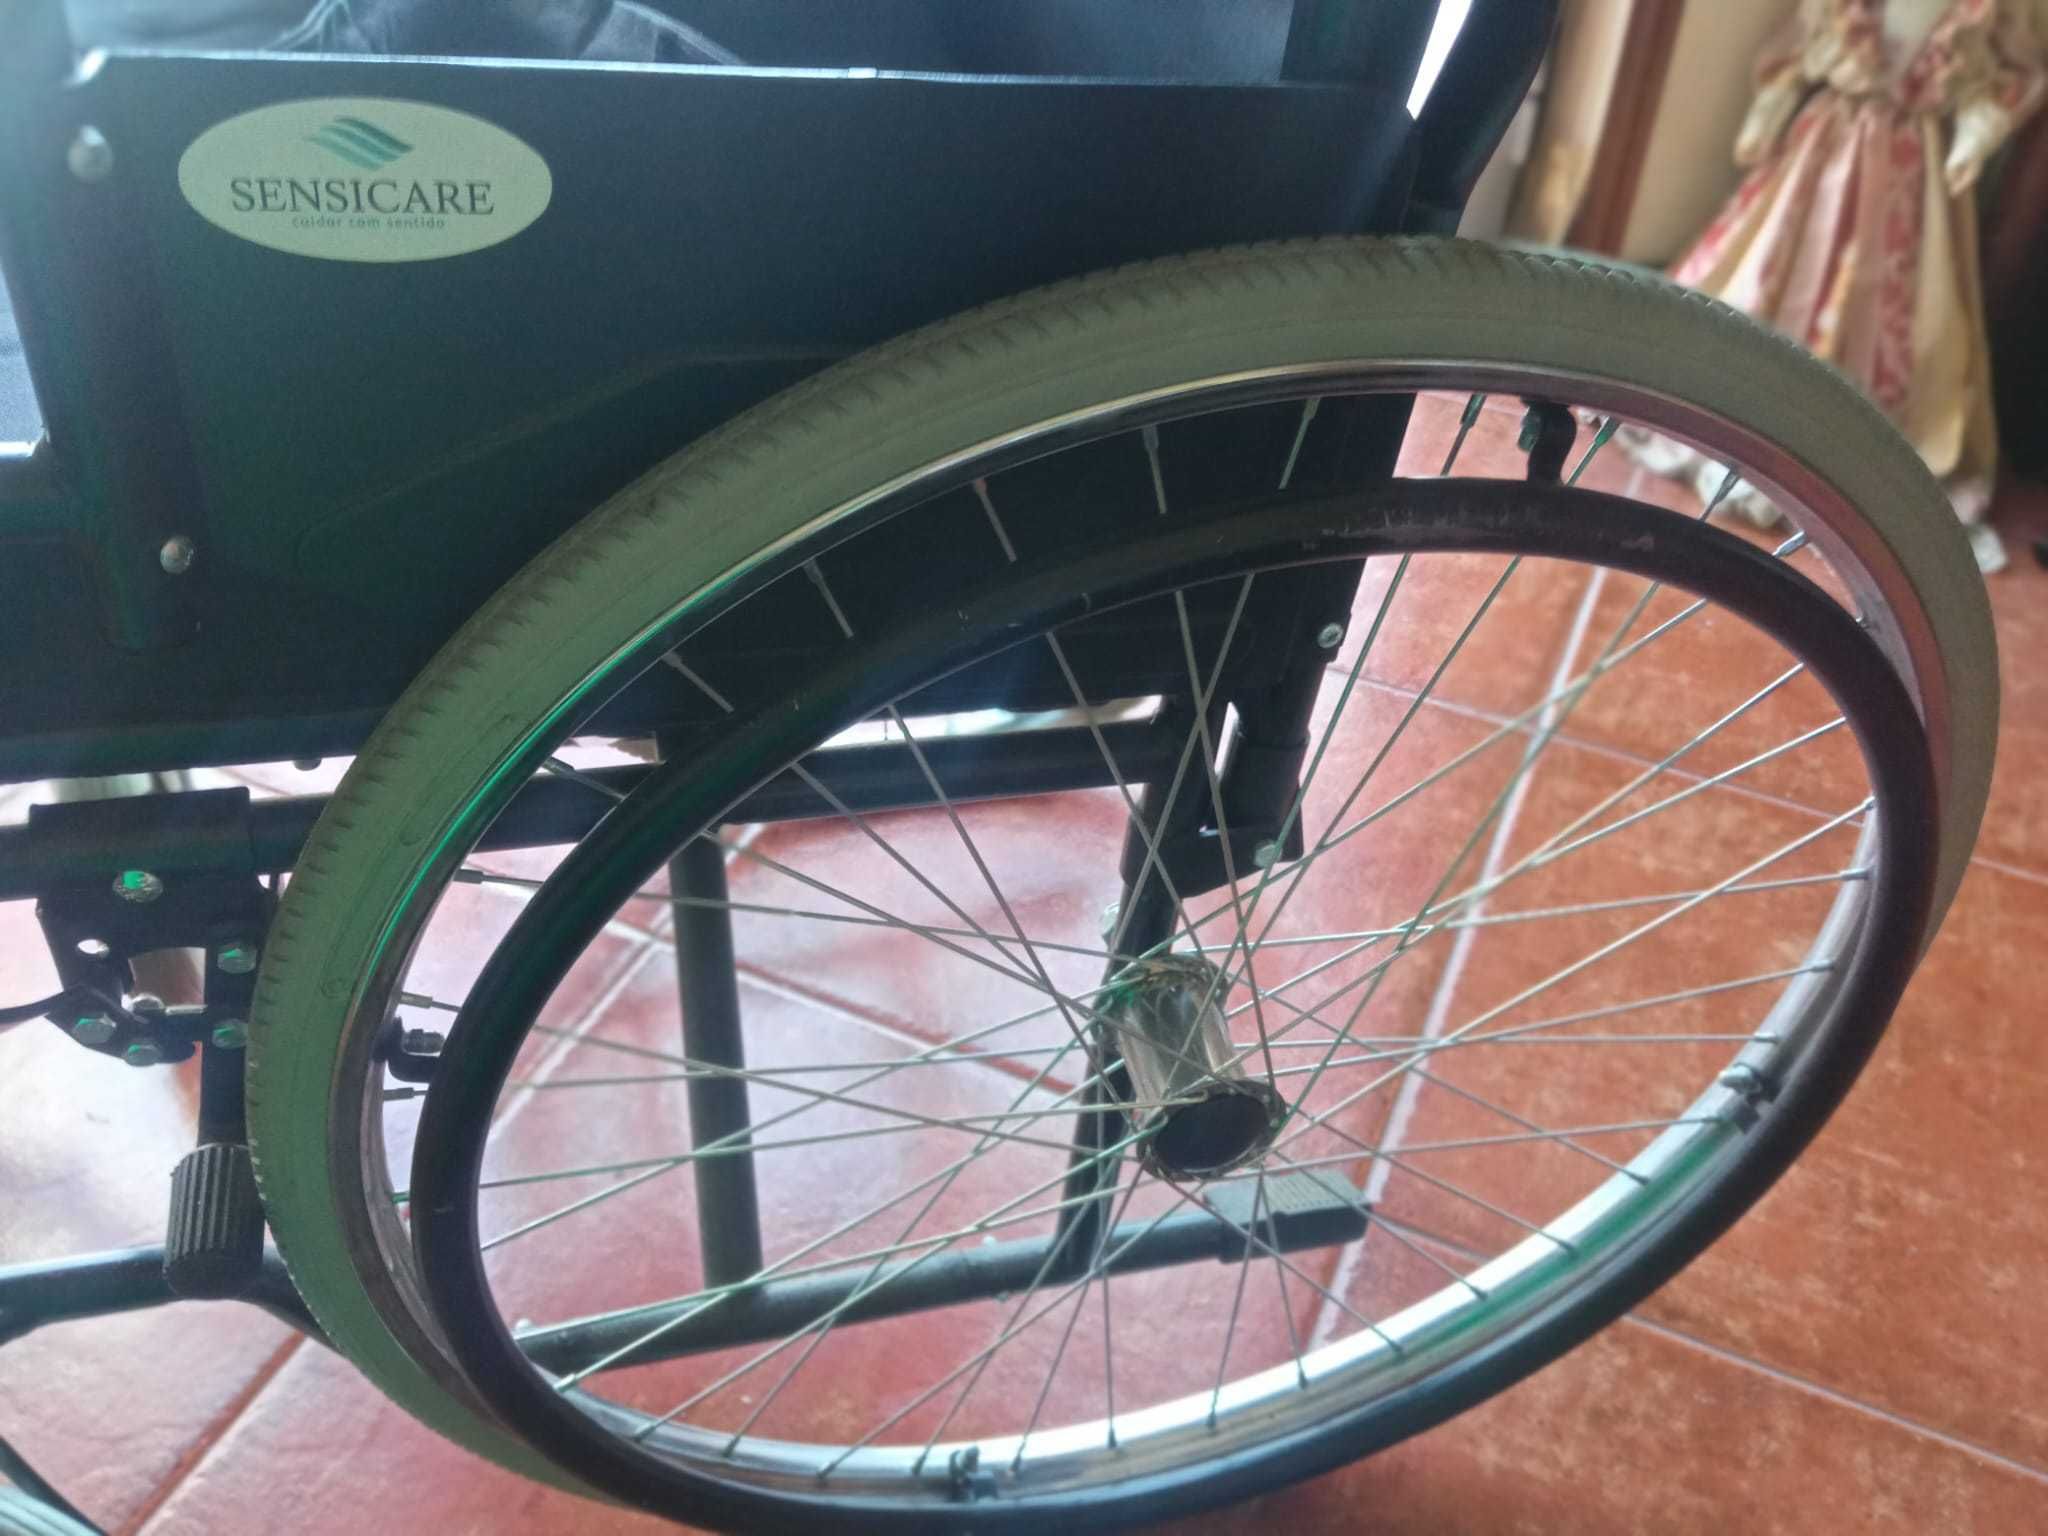 Cadeira de Rodas e Andarilho de rodas com travão e cesto